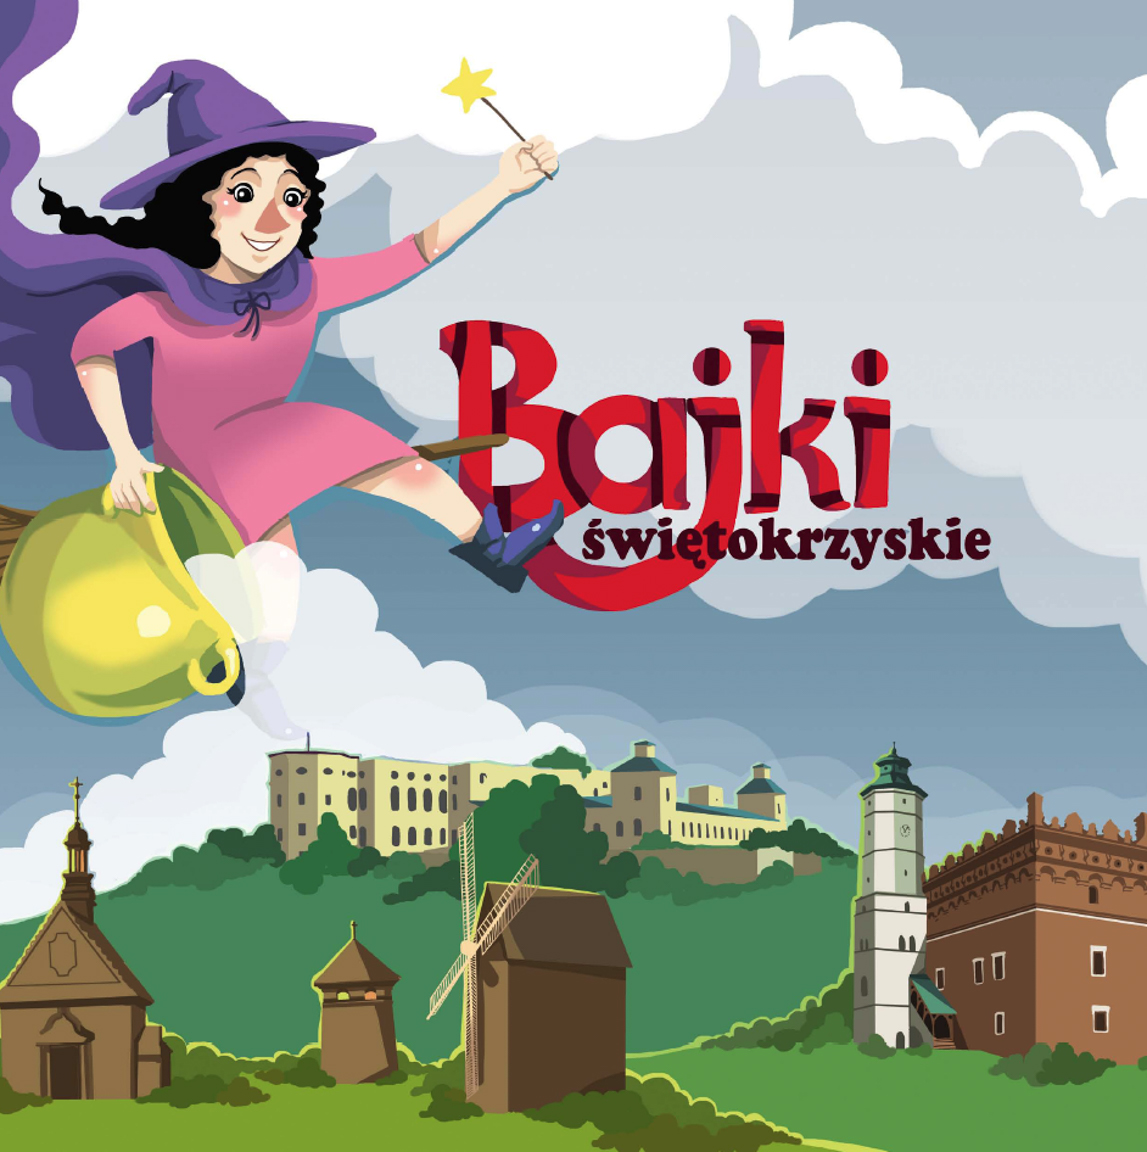 Okładka przewodnika Bajki Świętokrzyskie przedstawiająca latającą czarownicę.